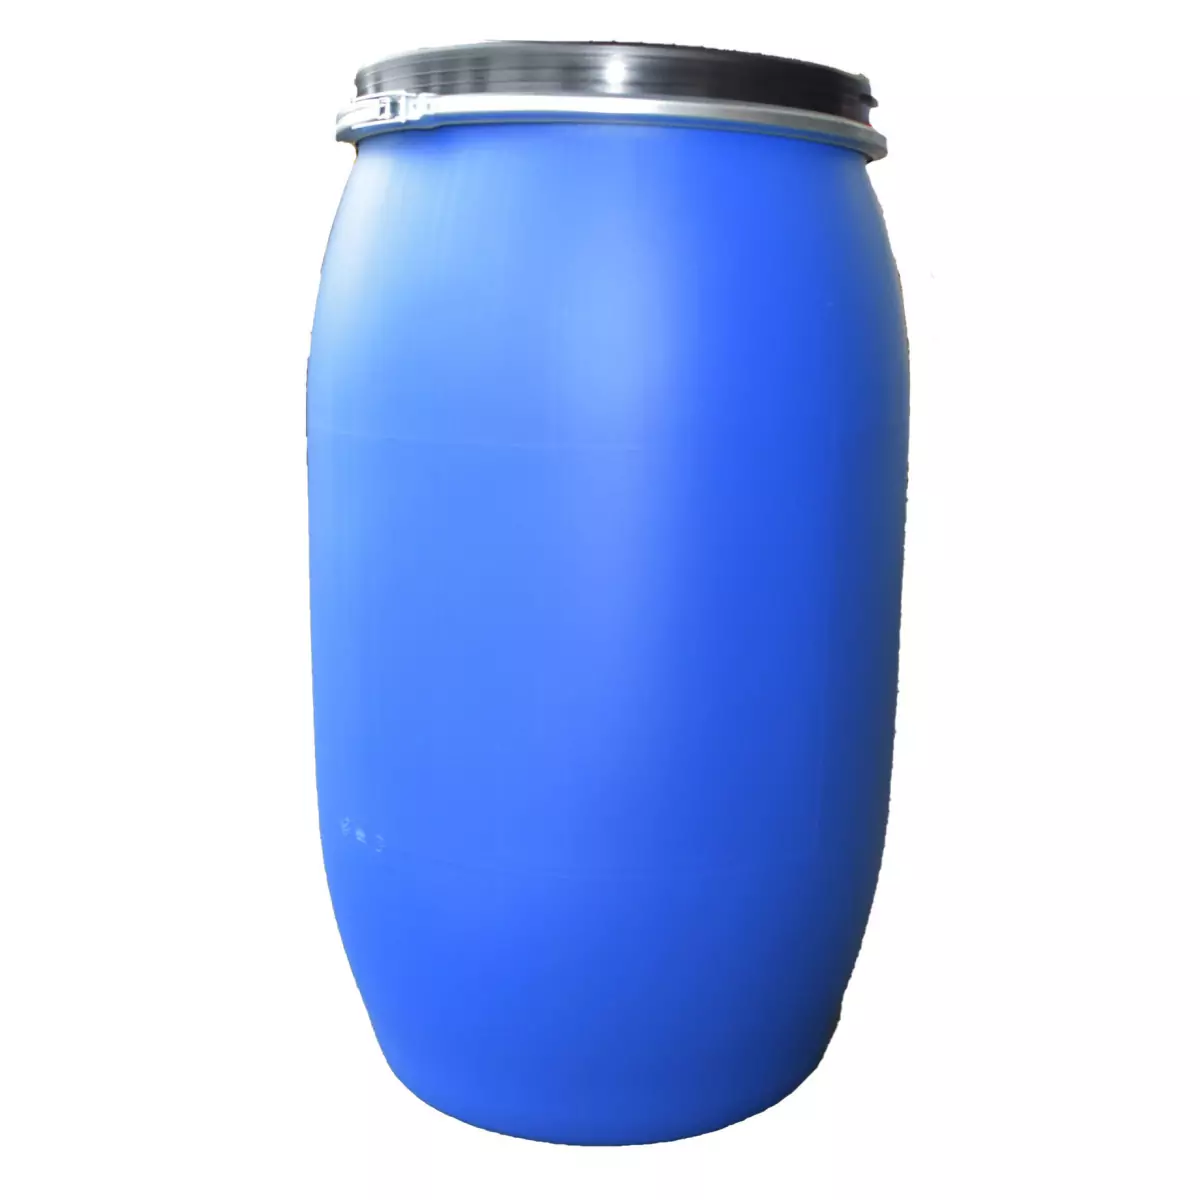 Fut / Bidon 30 litres bleu à ouverture totale